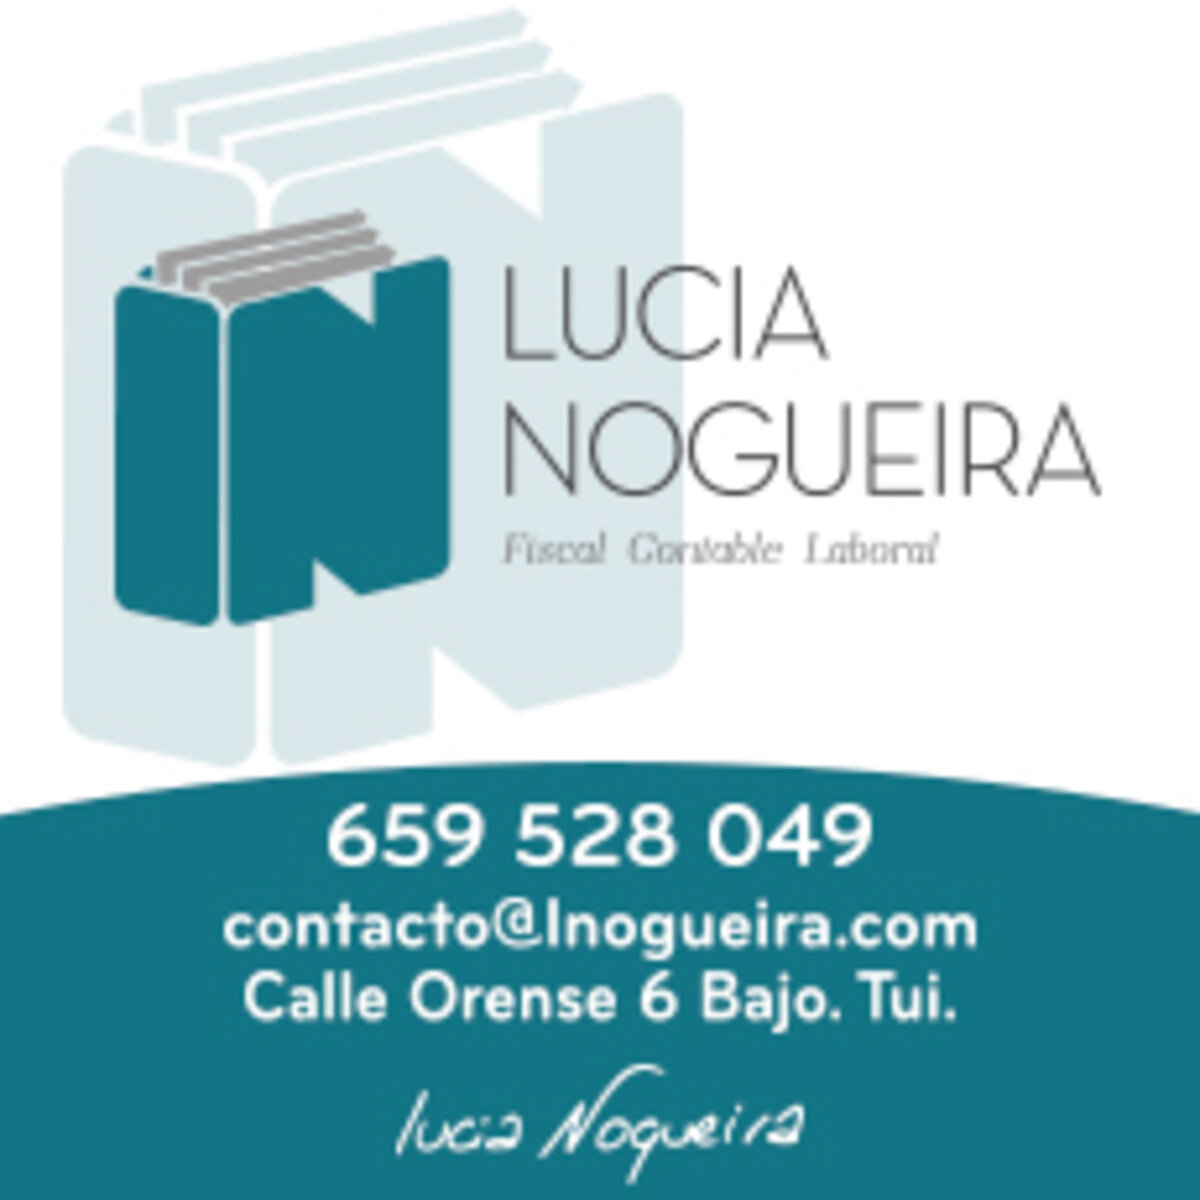 Gestoría Lucia Nogueira alvarez